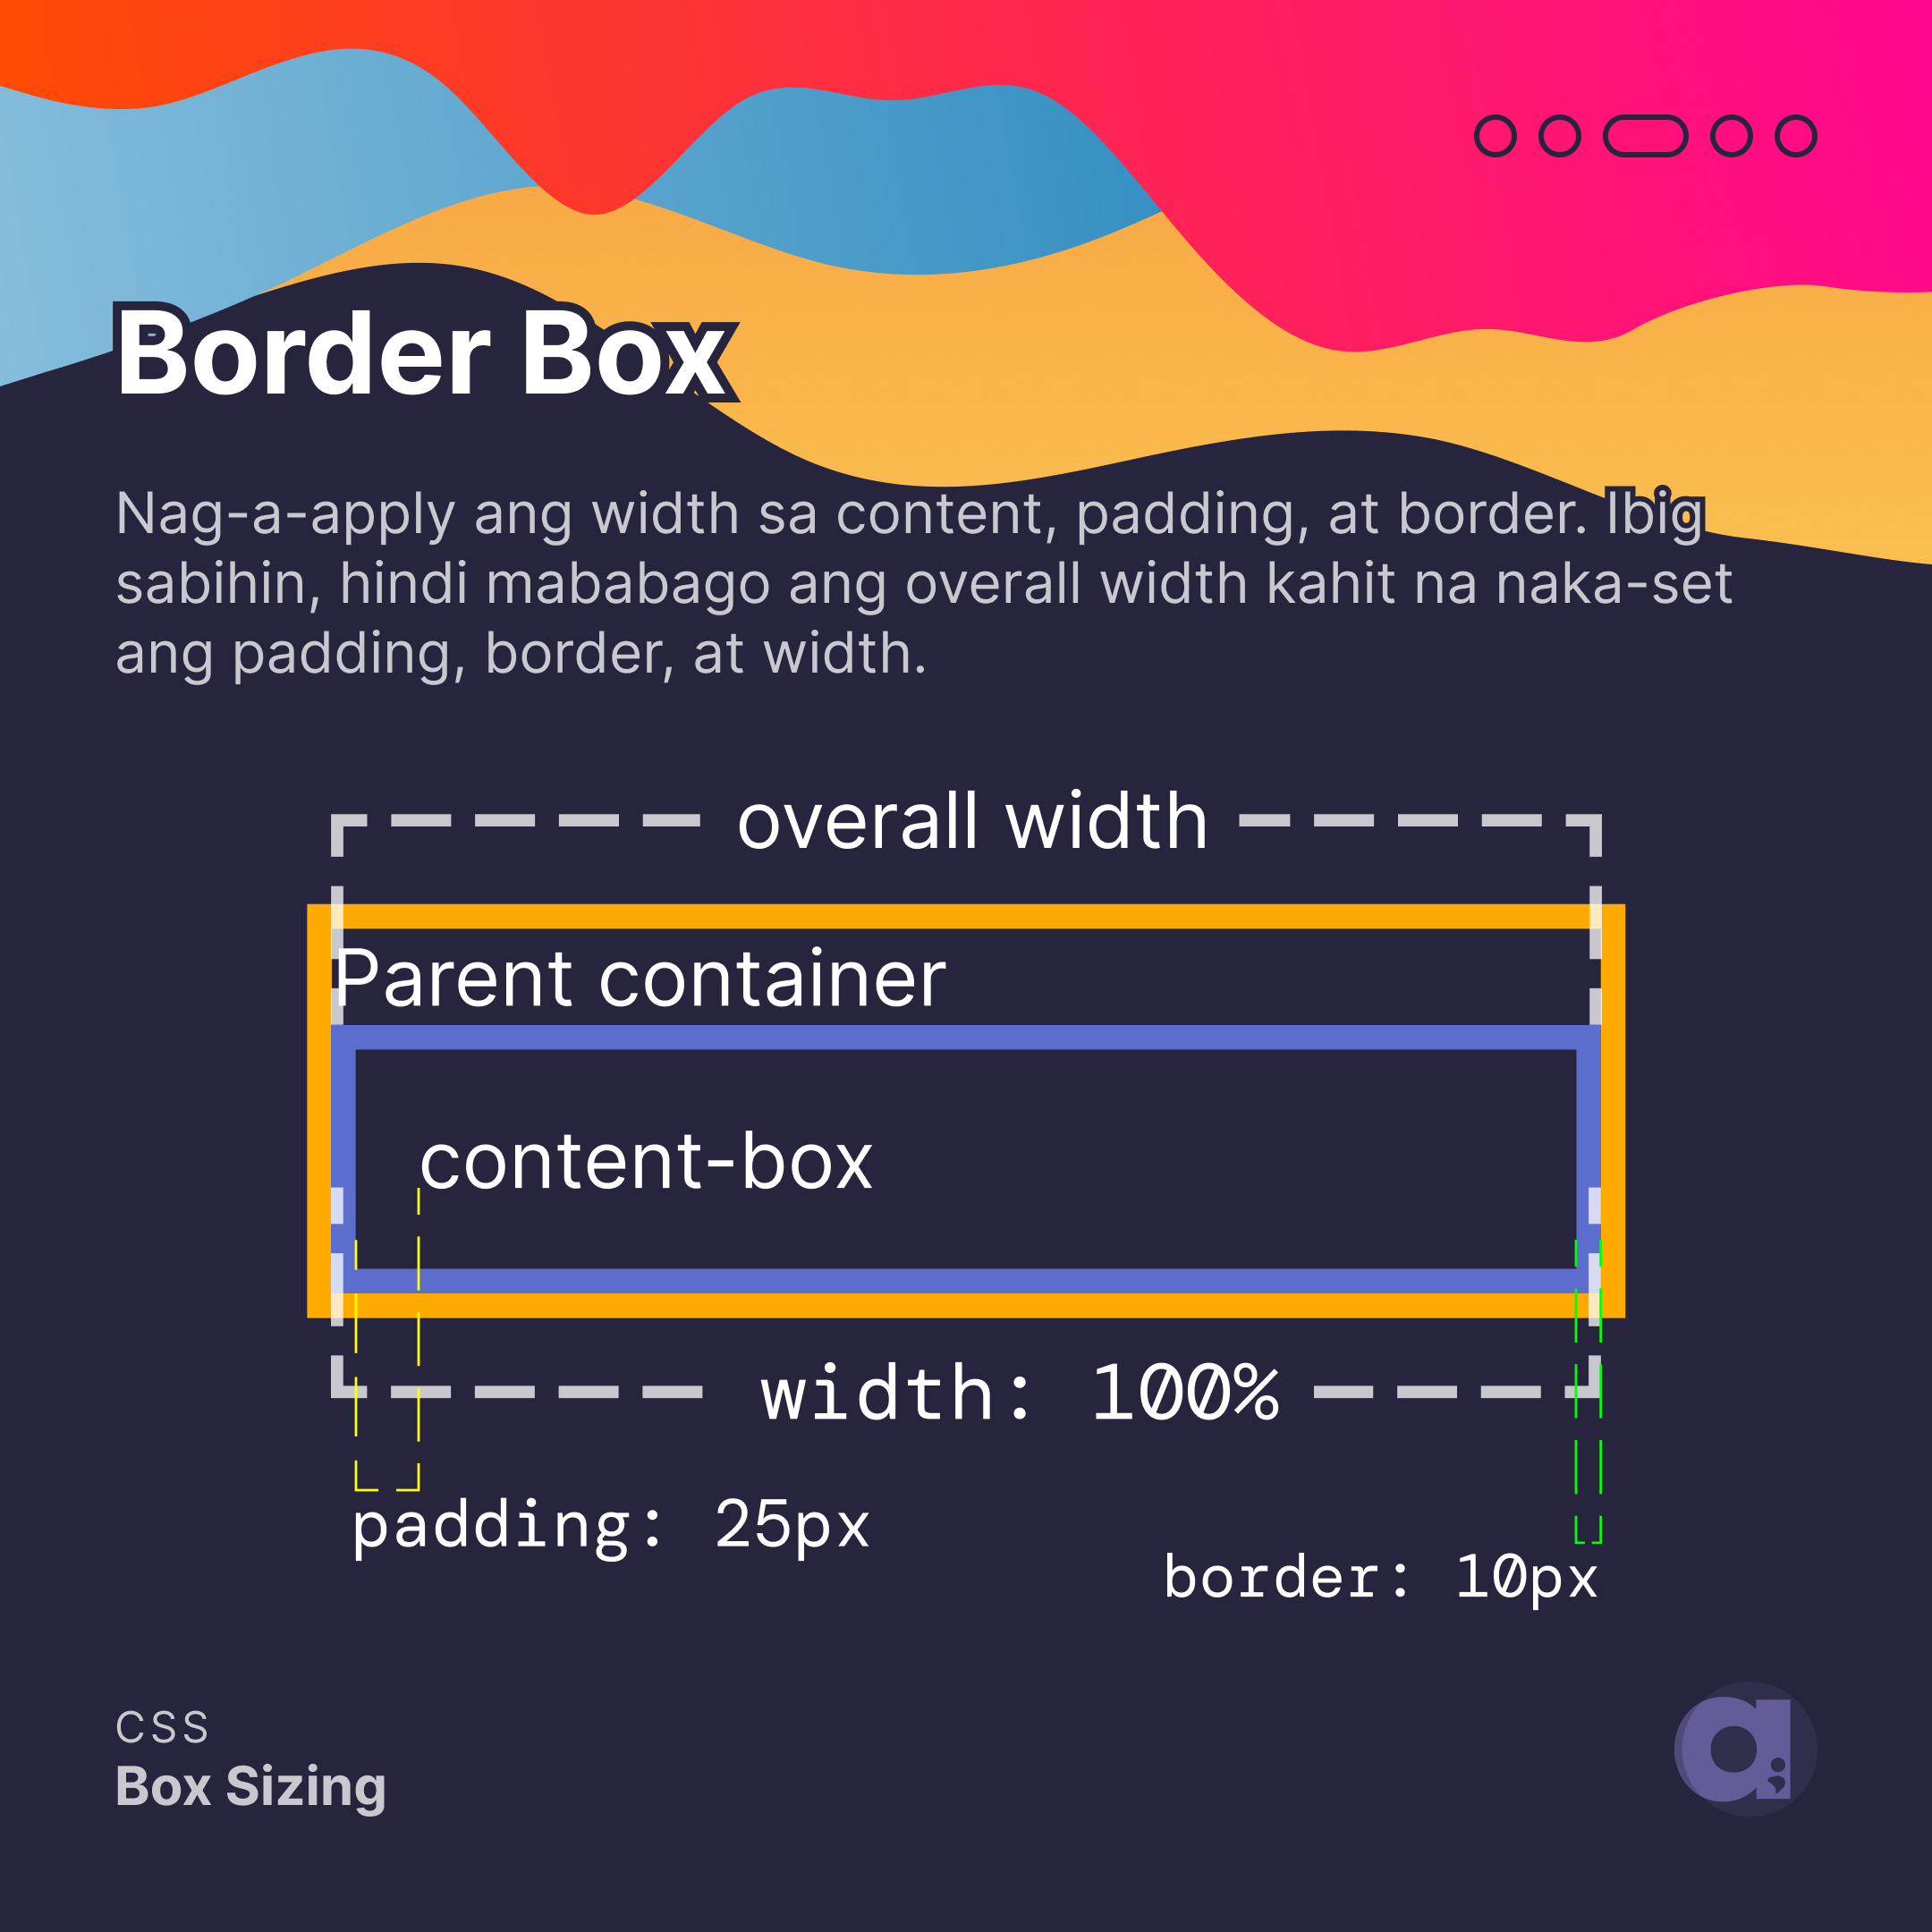 Border-box Nag-a-apply lang ang width sa content, padding, at border. Ibig sabihin, hindi magbabag ang overall width kahit na naka-set ang padding, border, at width.